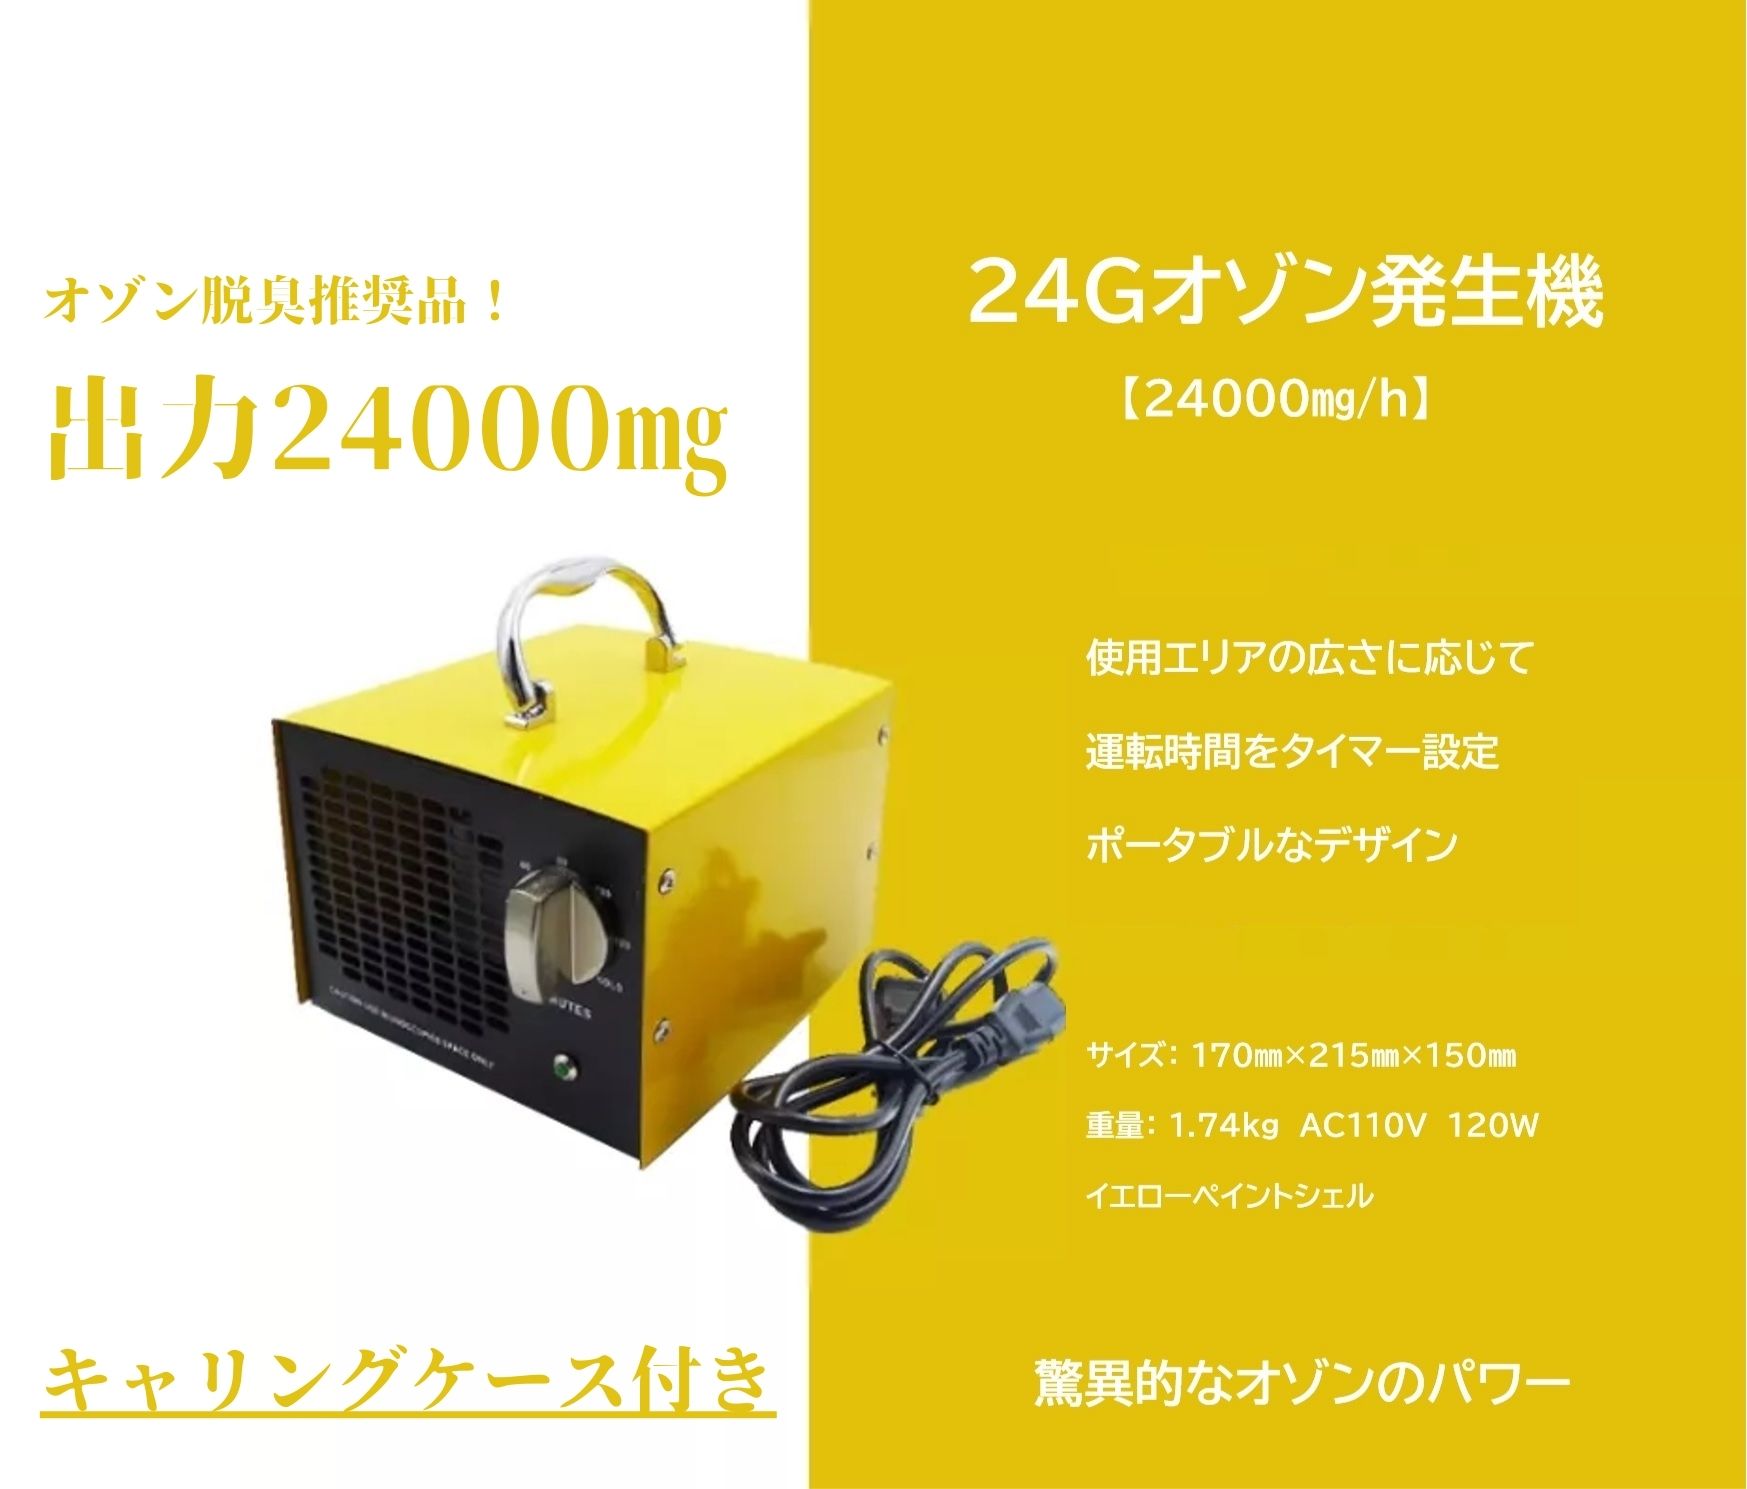 オゾン発生器 オゾン脱臭器 強力消臭 除菌 滅菌 10000mg/h 収納ケース付き 日本仕様の商品画像